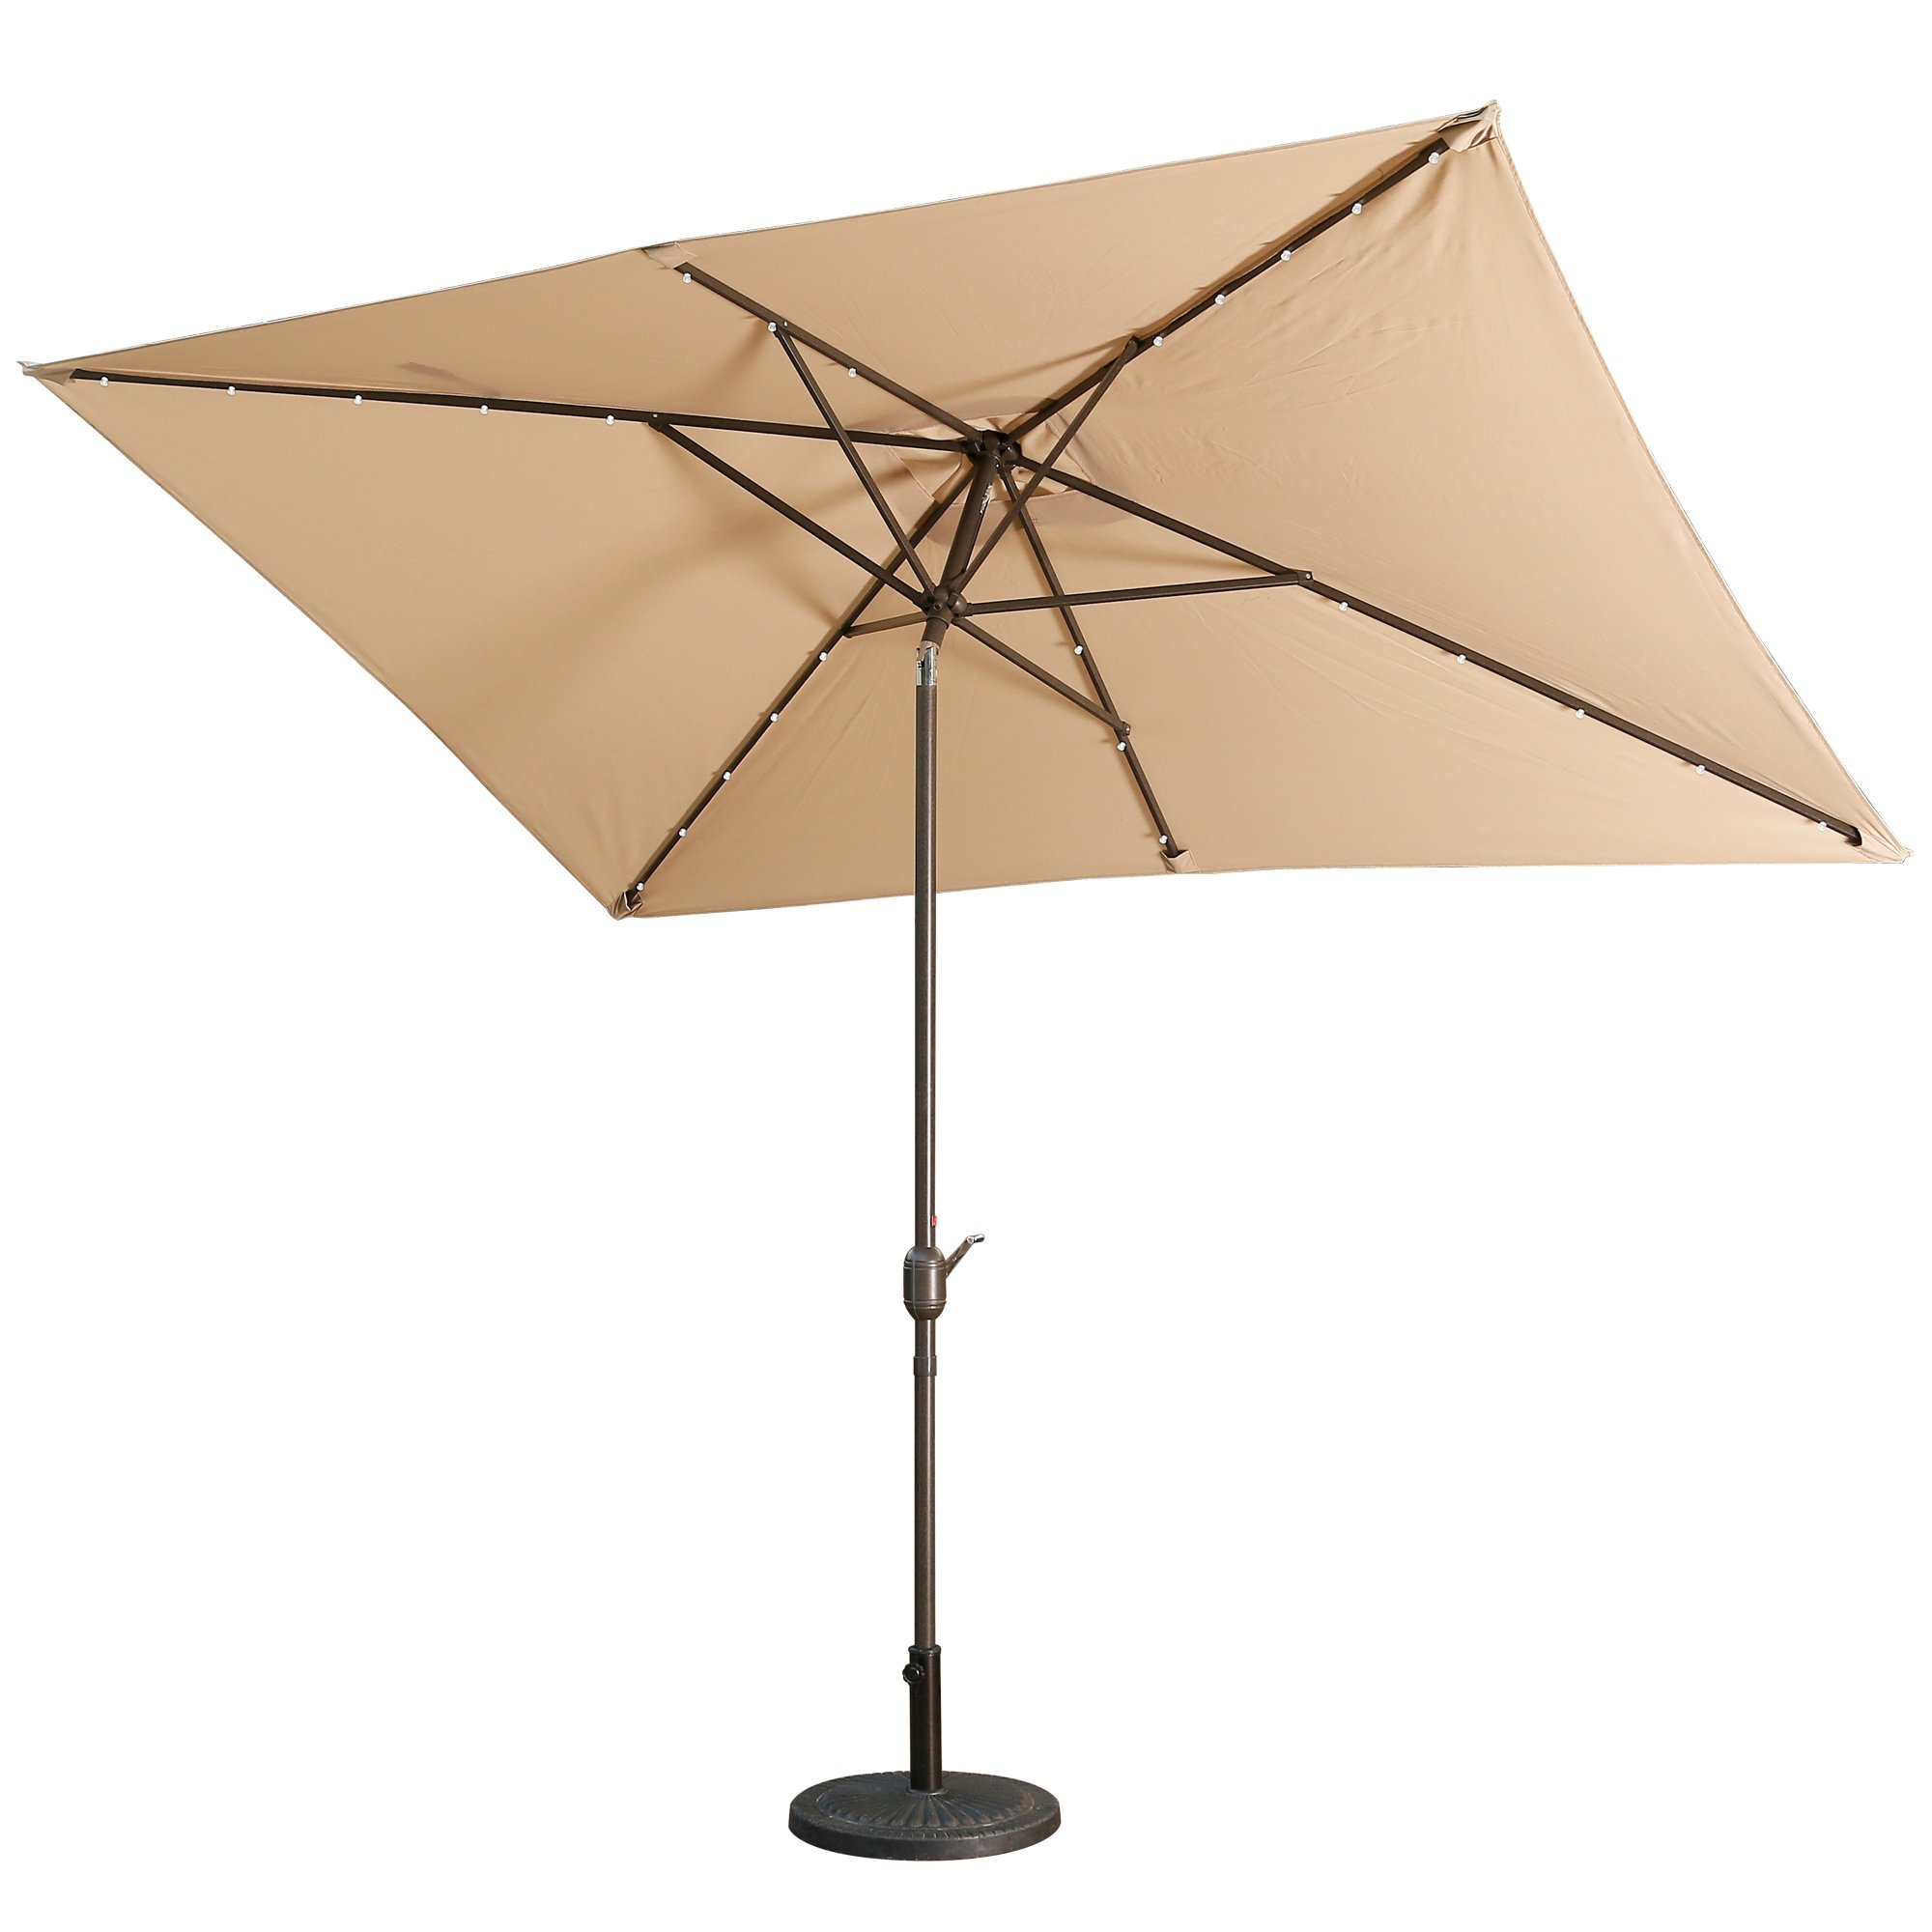 Casainc 10 ft. Aluminum Rectanglar Market LED Patio Umbrella in Beige-CASAINC